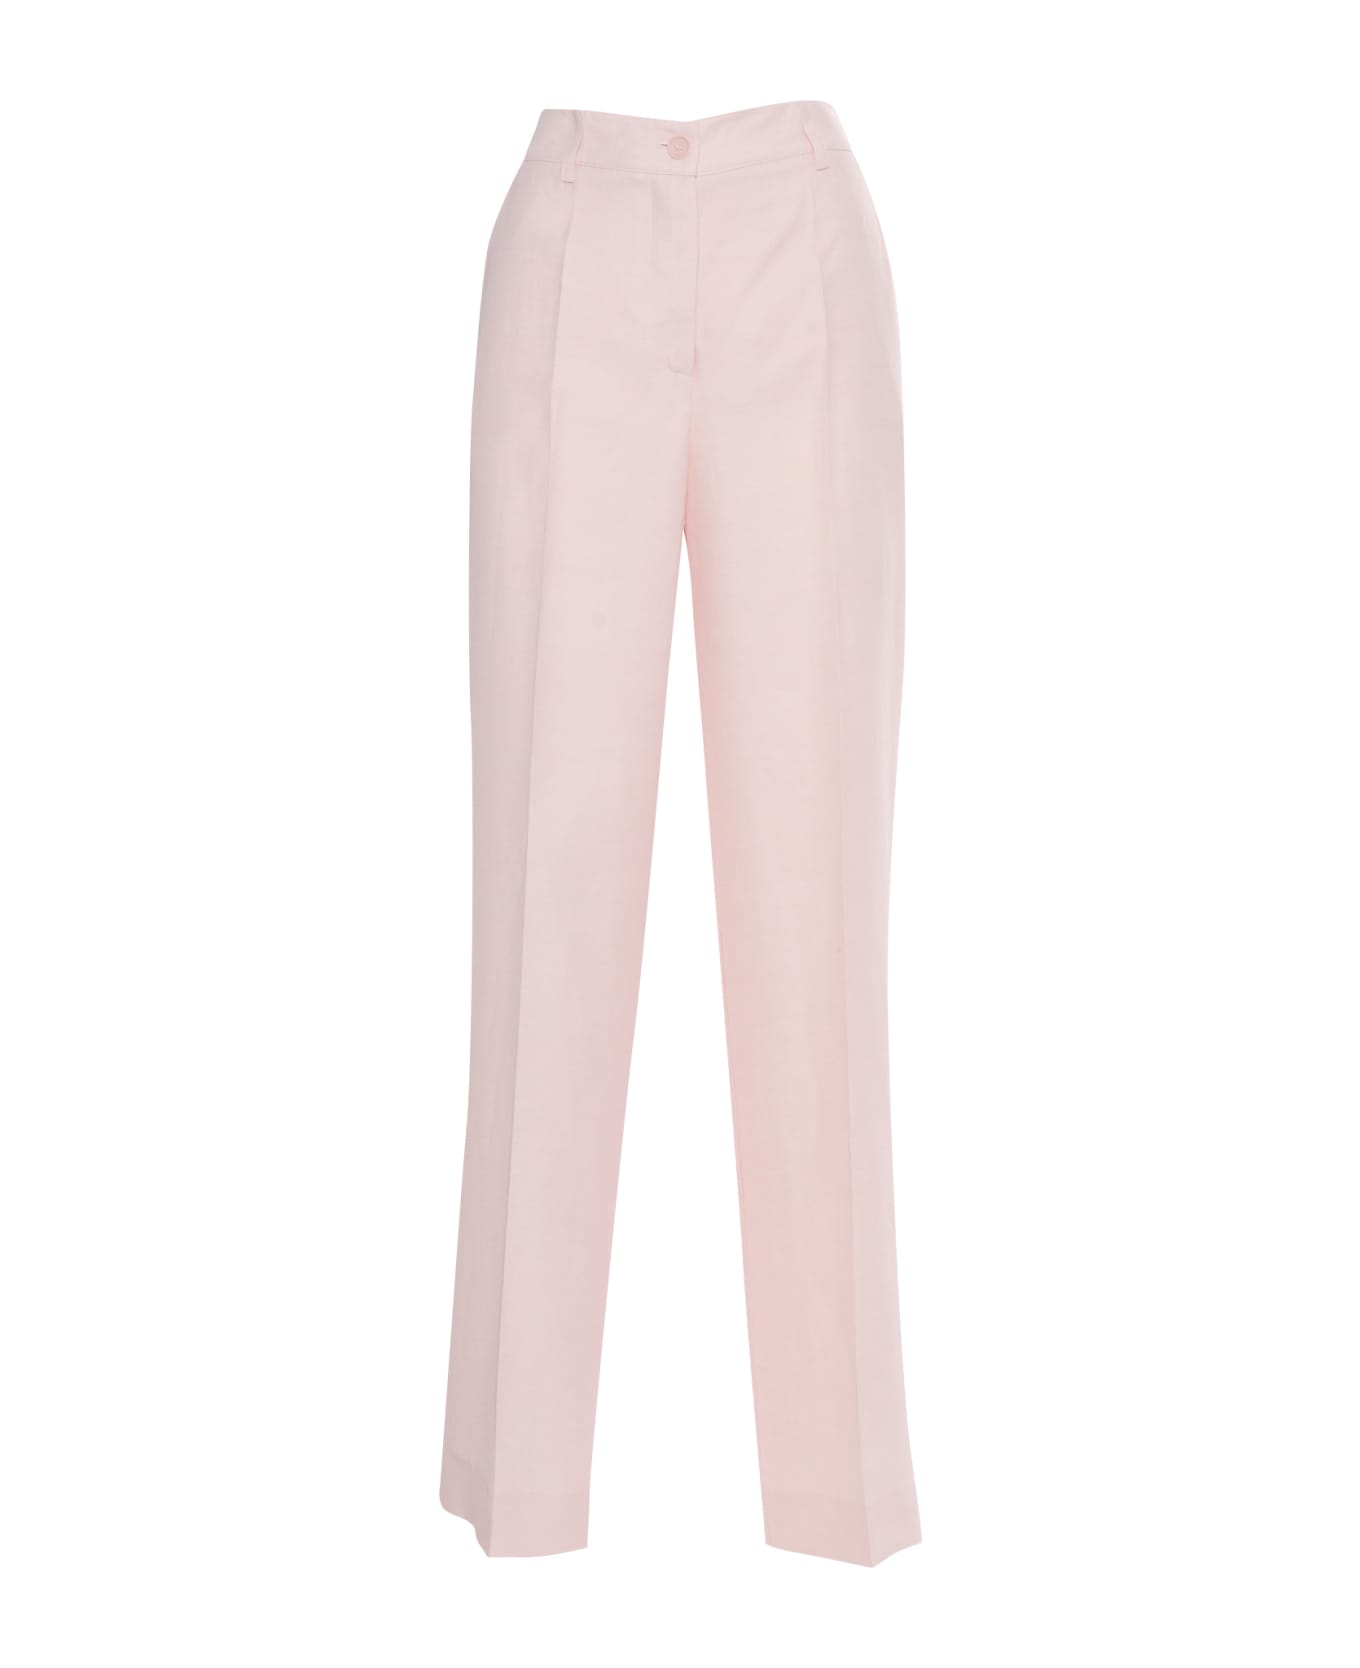 Parosh Pantalone Elegante Donna - PINK ボトムス